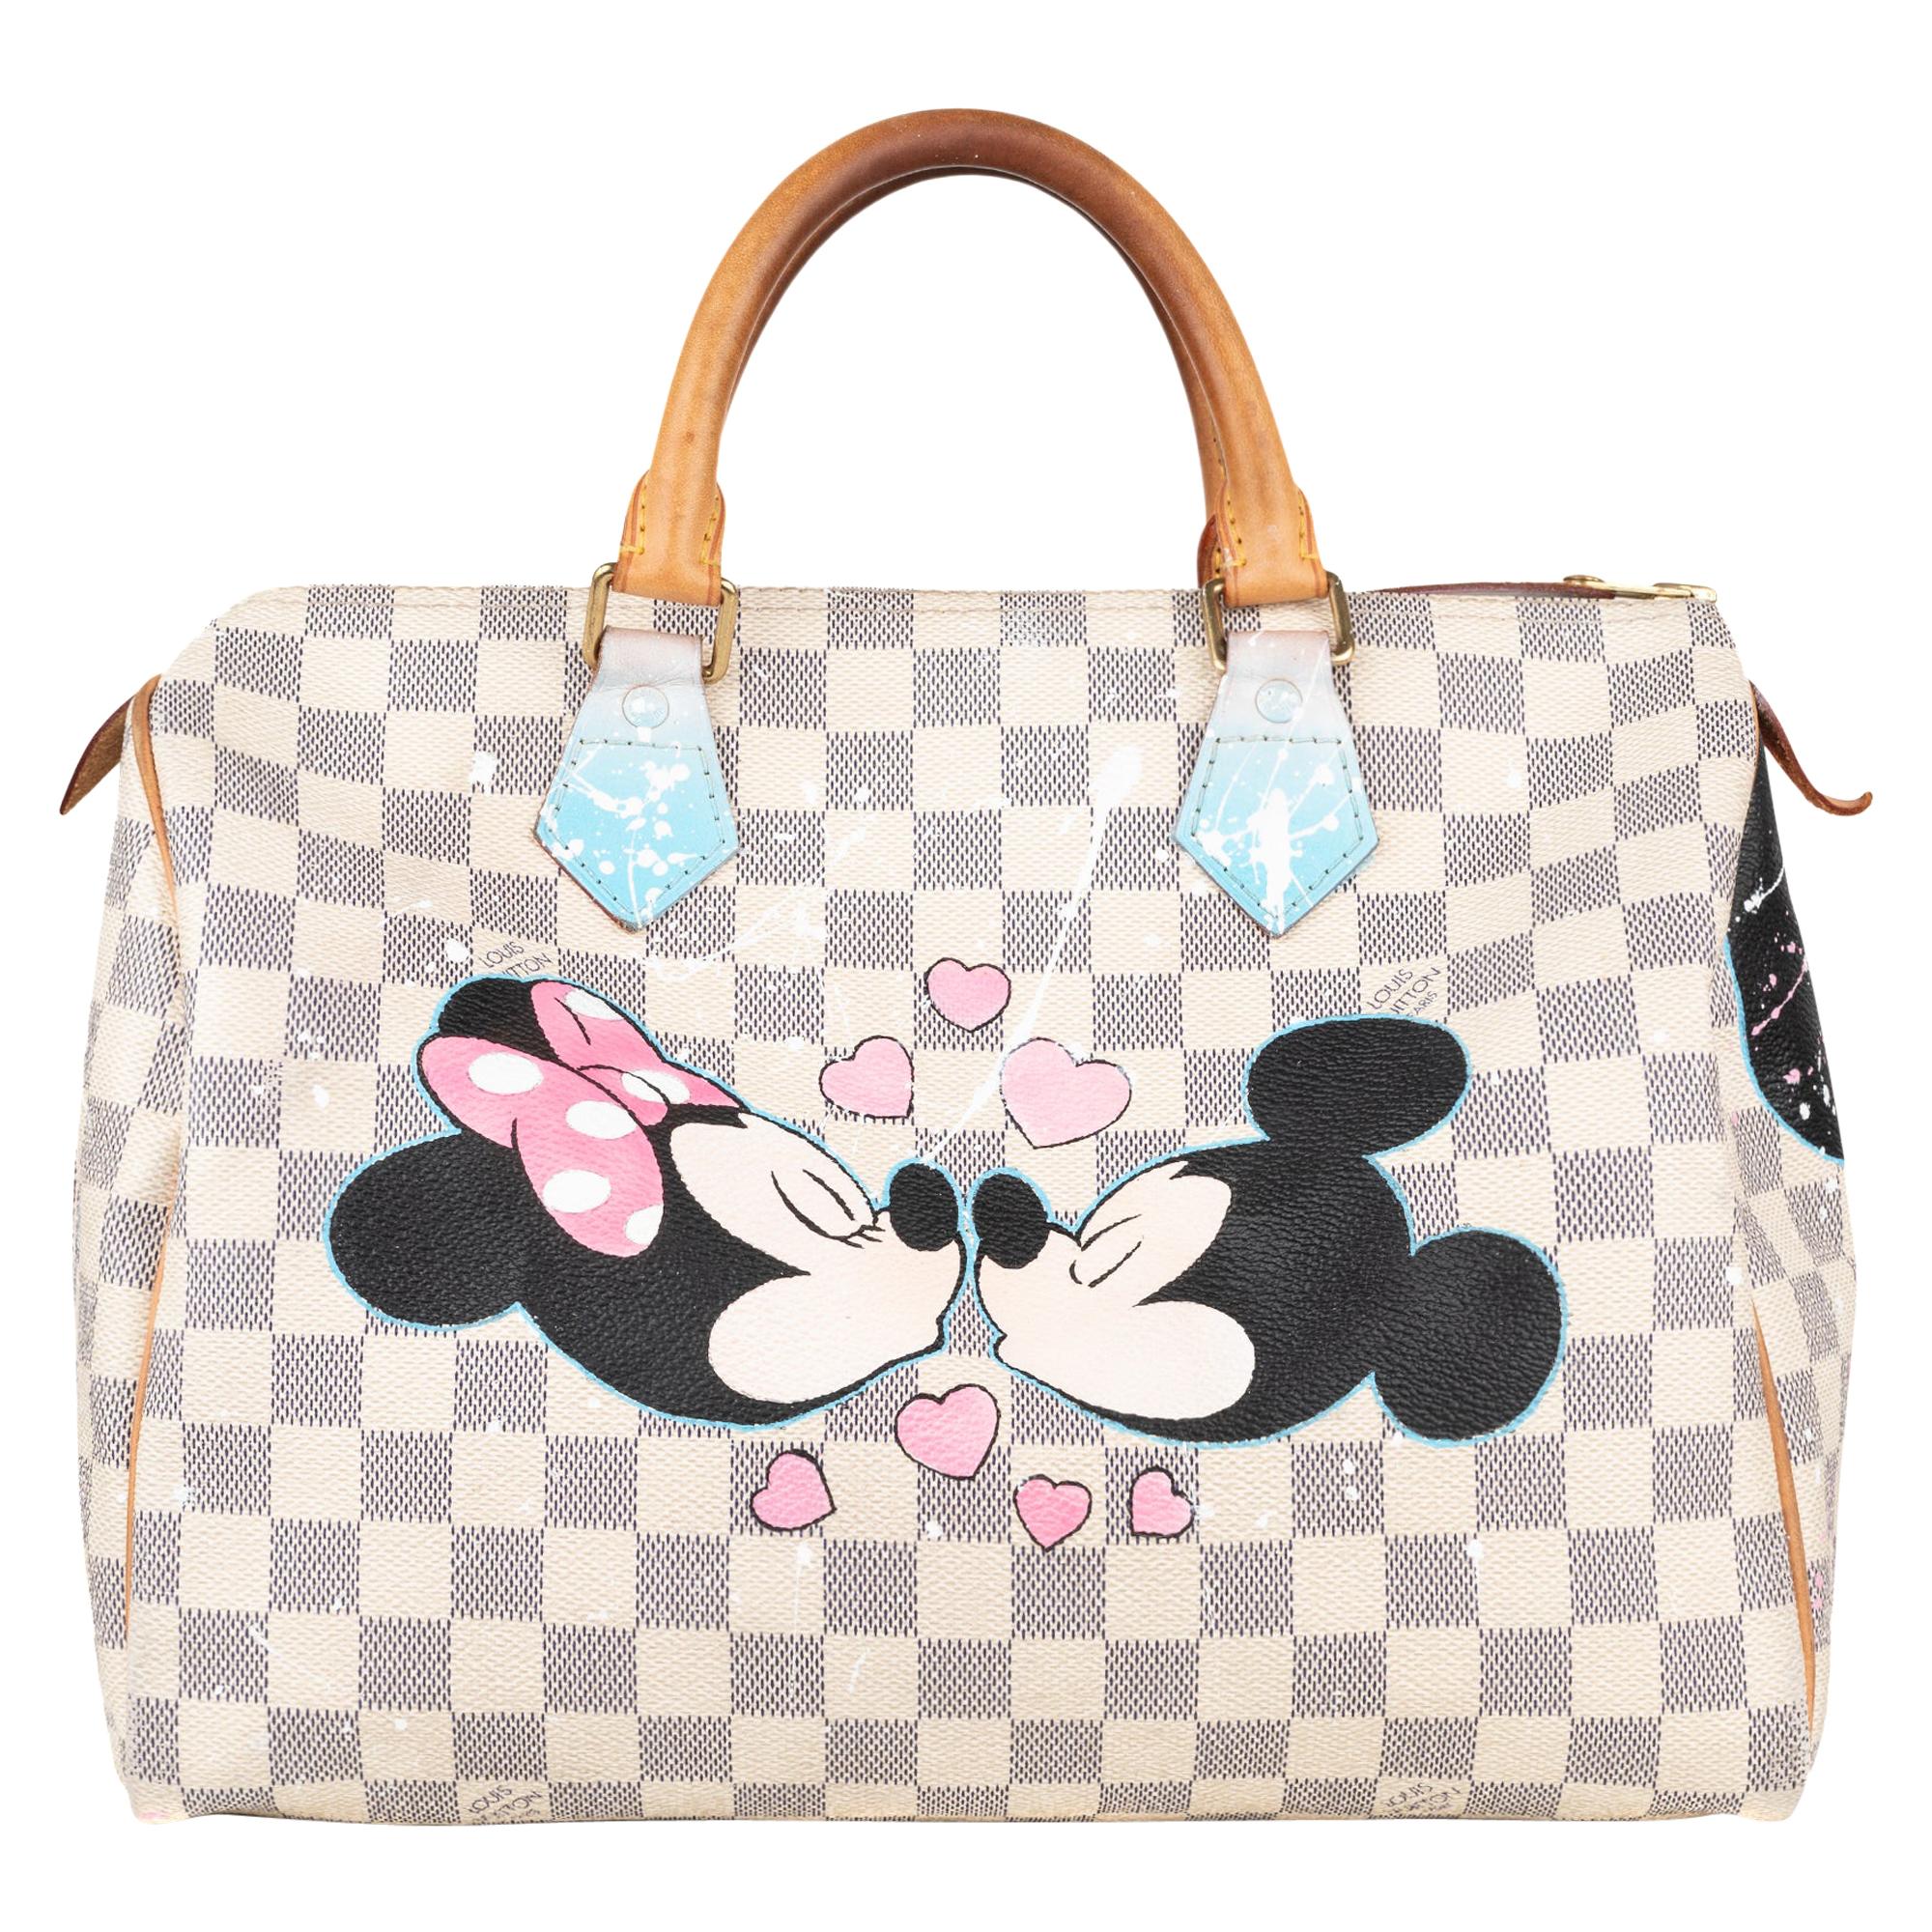 Handbag Louis Vuitton Speedy 30 customized Minnie&Mickey by PatBo !